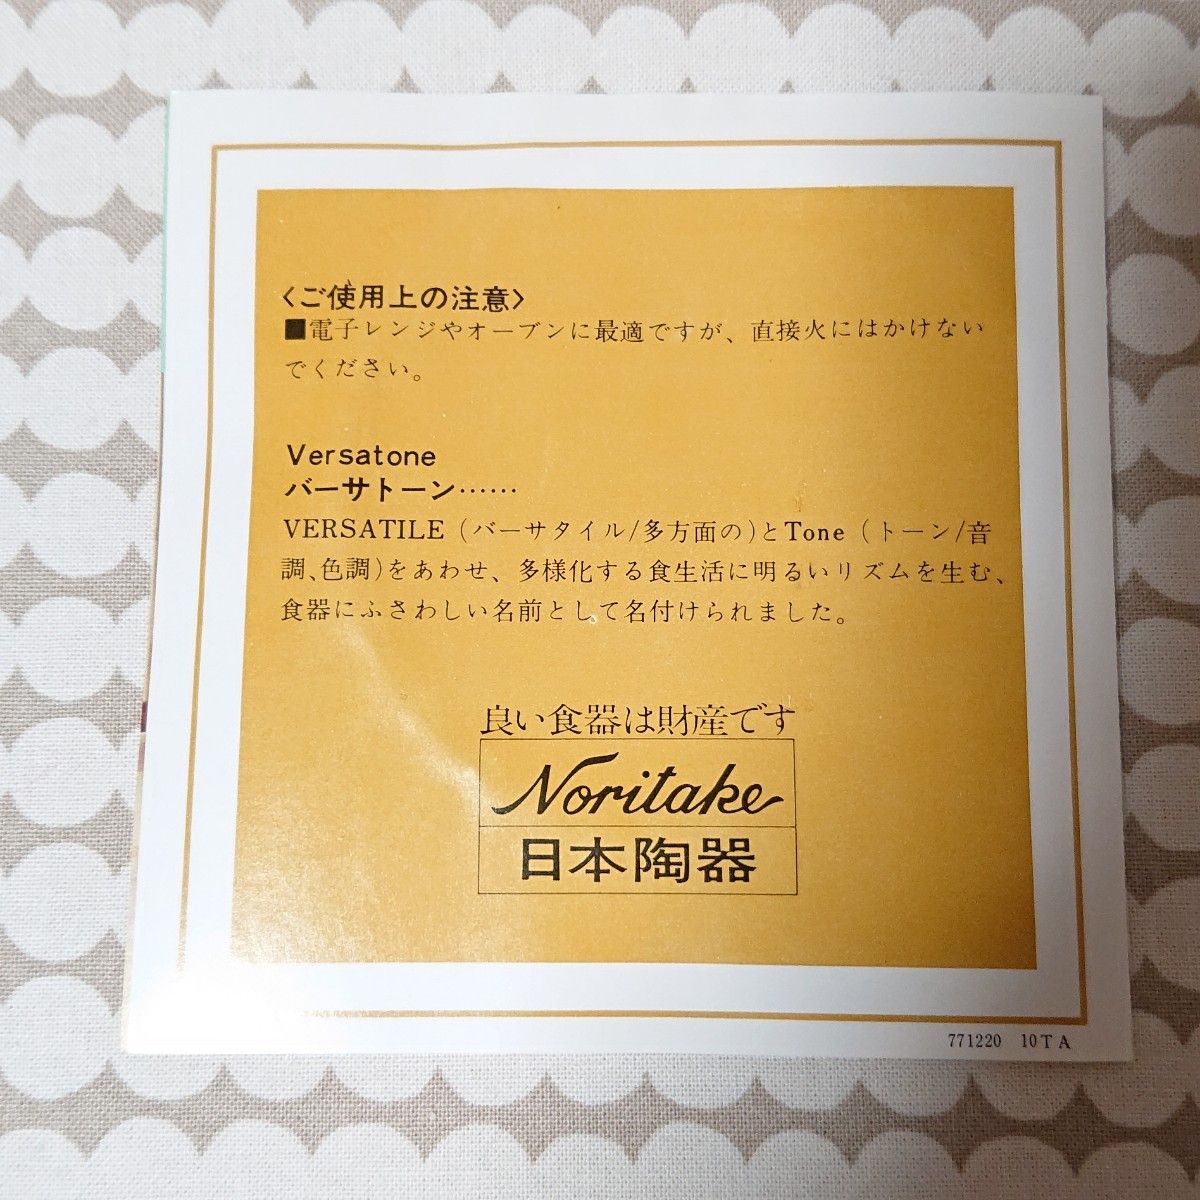 【レア】Noritake ノリタケ バーサトーン シェル型プレート2枚 クローバー 昭和レトロ 喫茶店 レア 未使用品